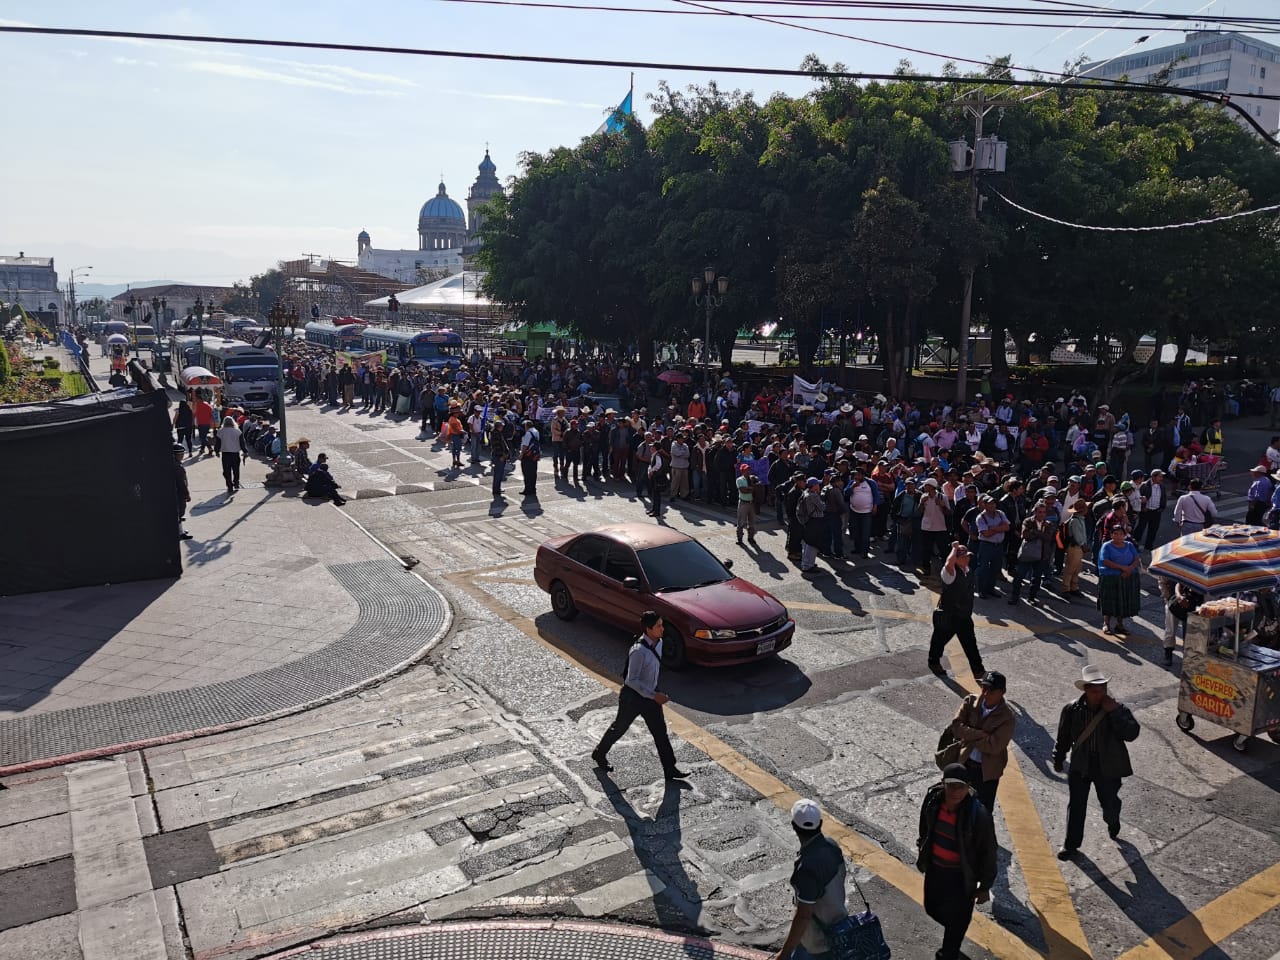 La marcha comenzó en la Plaza de la Constitución. (Foto Prensa Libre: María René Gaytán).